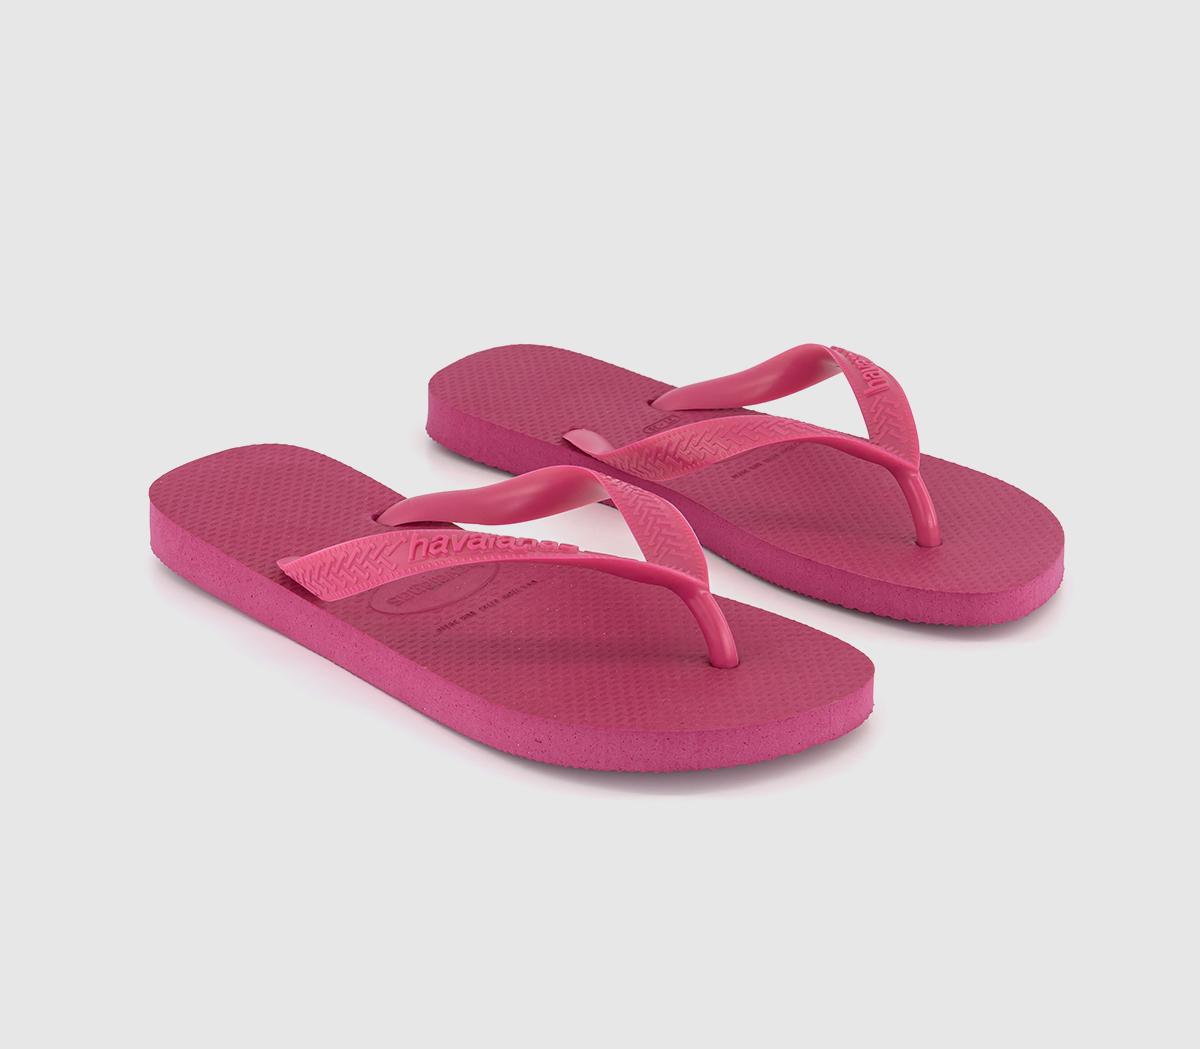 Havaianas Top Flip Flops Pink Electric - Women’s Sandals